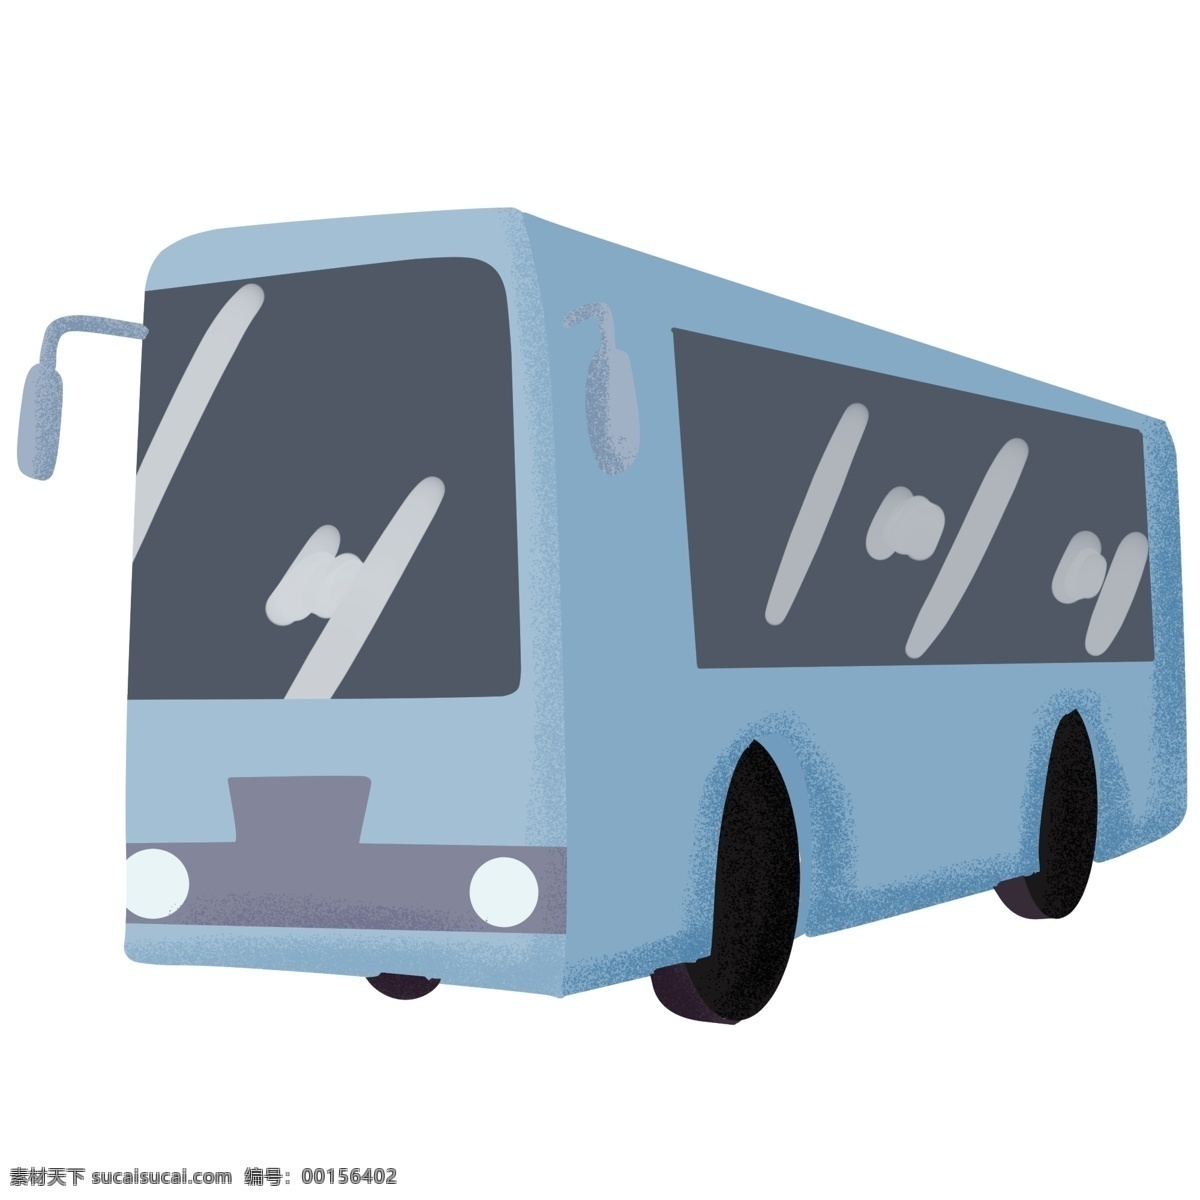 蓝色 卡通 公交车 插画 卡通公交车 交通工具 蓝色汽车 公共交通 公交车插画 蓝色公交车 可爱的公交车 透明车玻璃 长条车